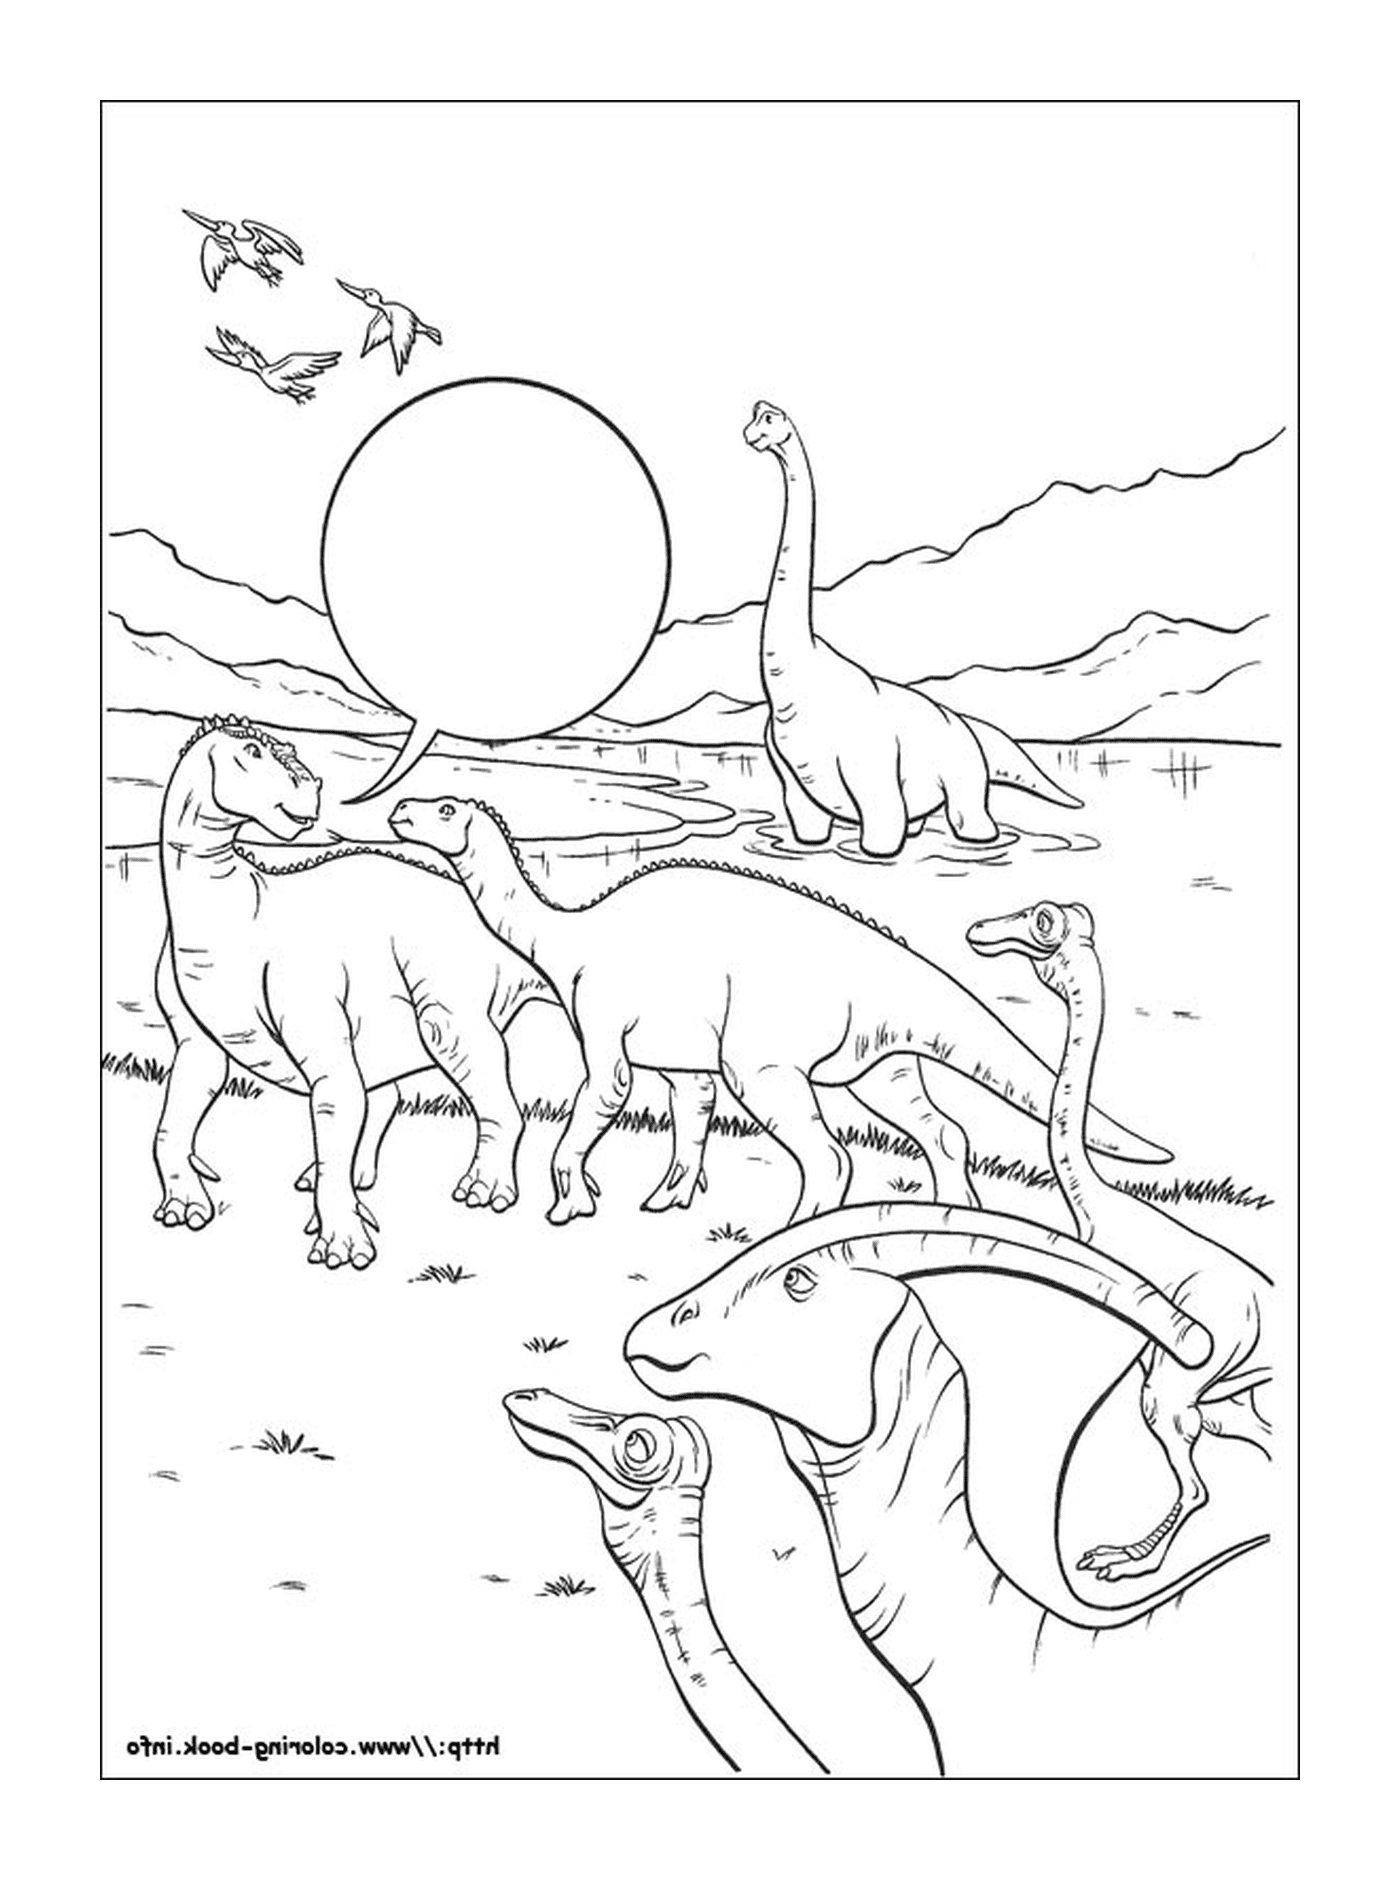  Многие динозавры, видимые в этом образе 